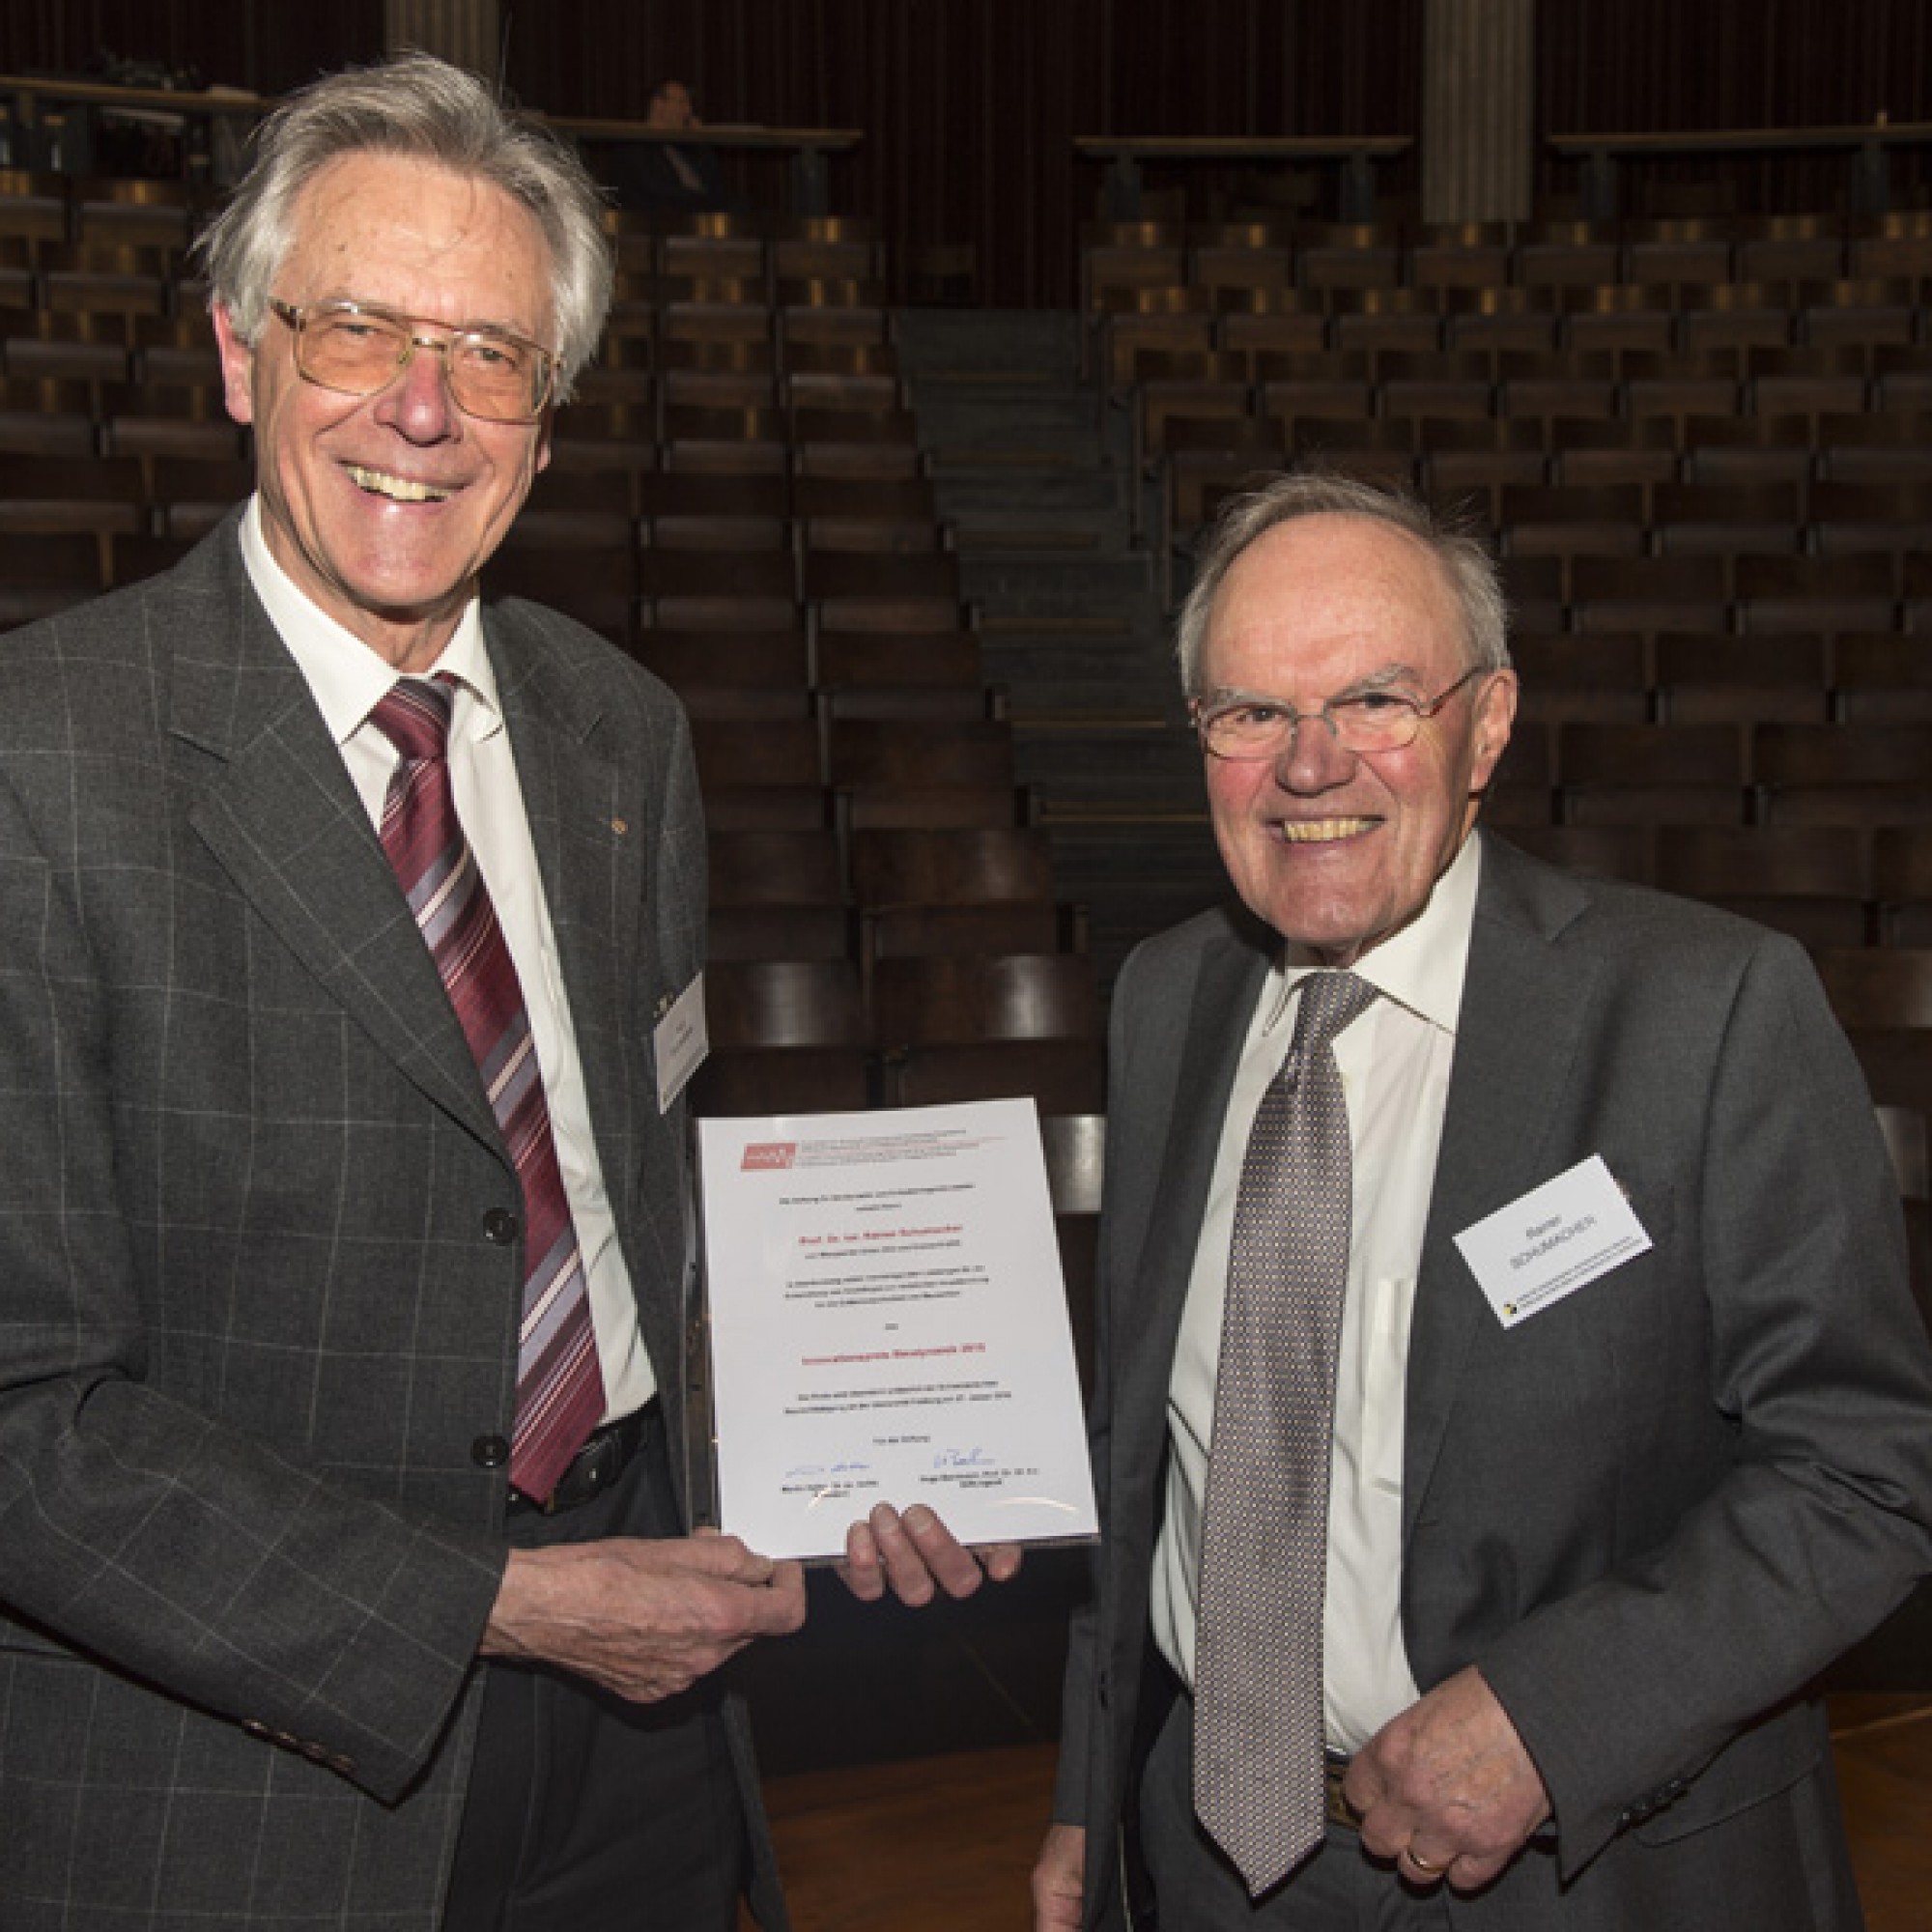 Stiftungsrat Hugo Bachmann (links) übergibt Rainer Schumacher den Innovationspreis Baudynamik. (Bild: Martin Deuring)